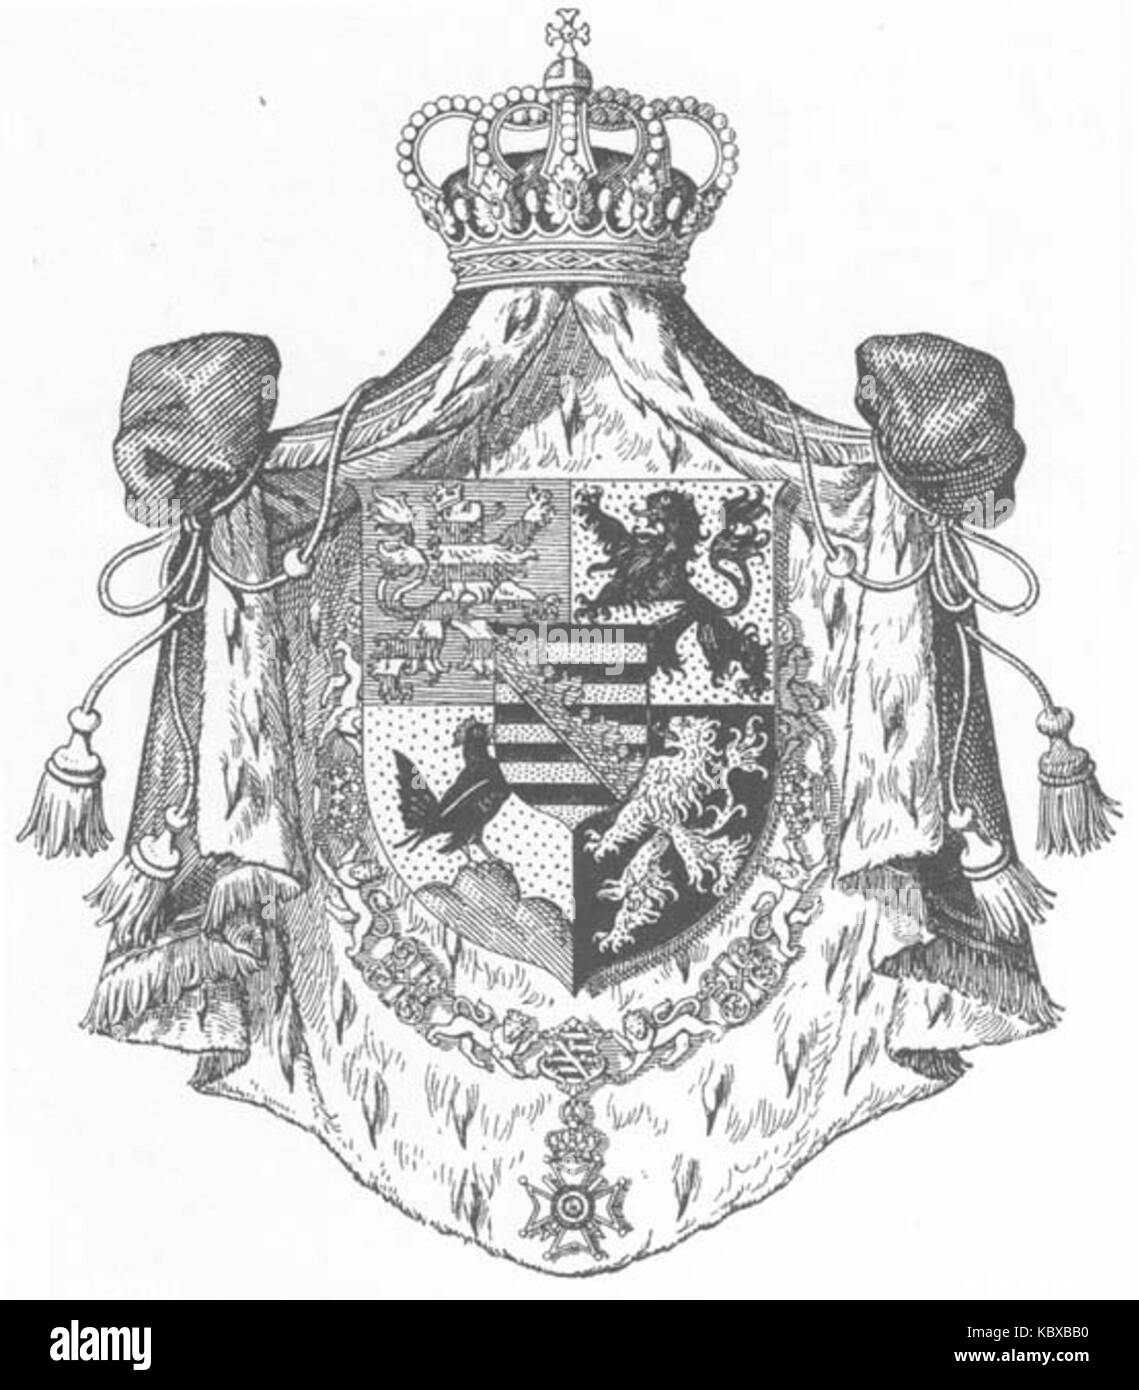 Wappen Deutsches Reich   Herzogtum Sachsen Coburg und Gotha (Mittleres) Stock Photo